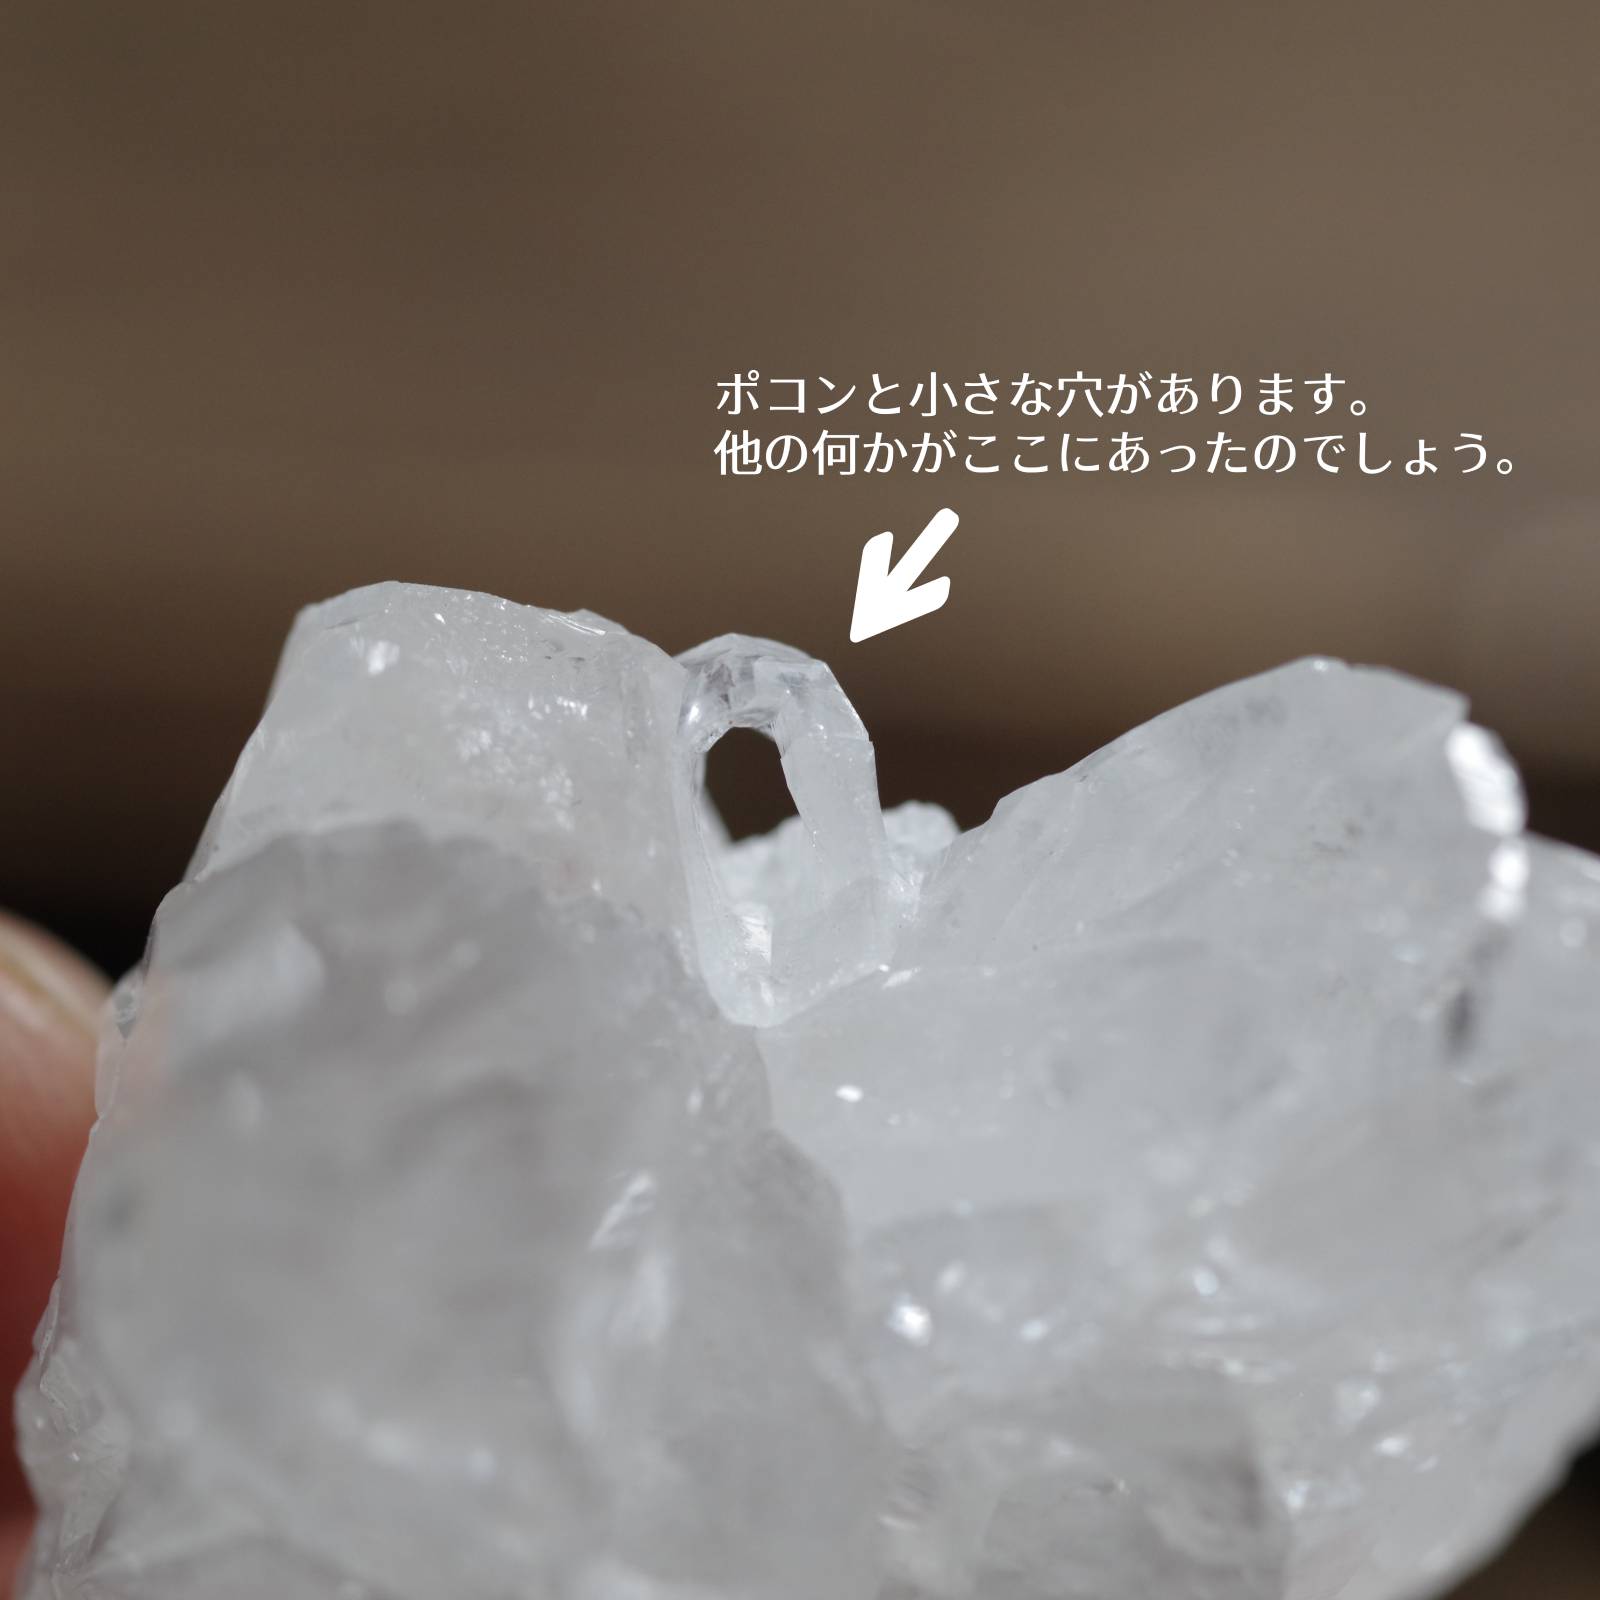 アラゴナイト ARAGONITE 原石 メキシコ産2 Mexico 白 white 写真現物 動画あり